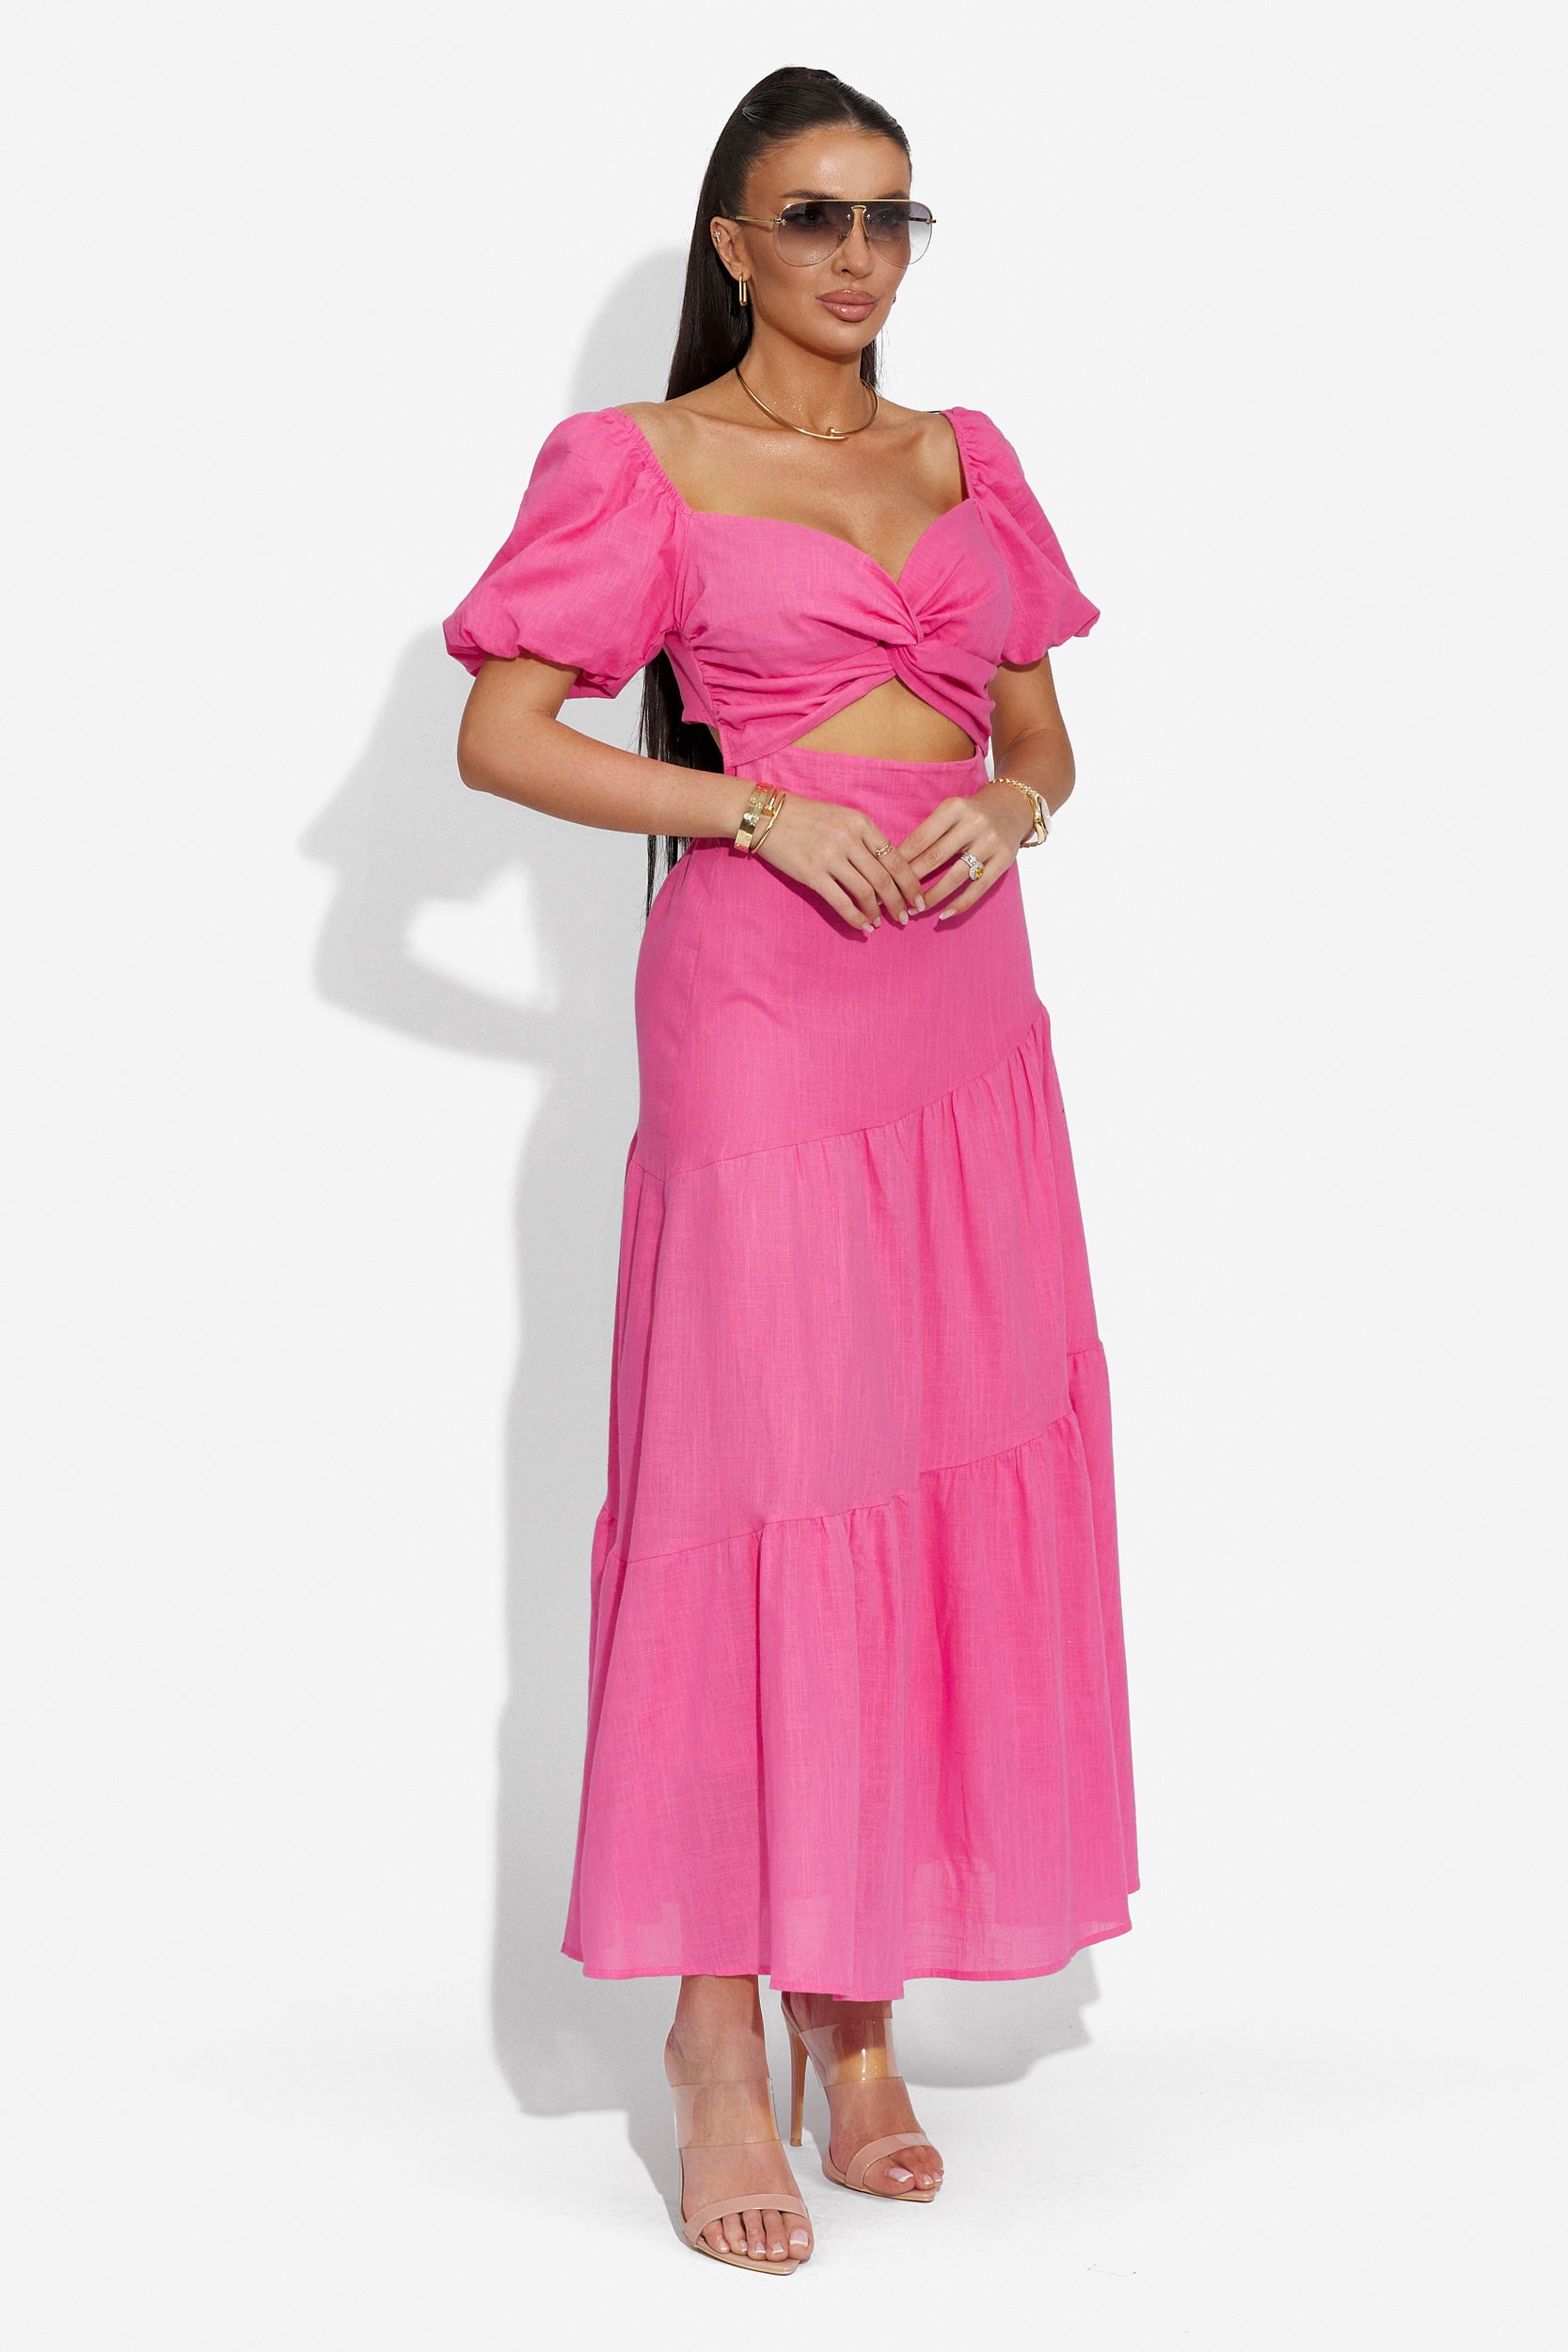 Дамска дълга рокля в розово Mosysca Bogas